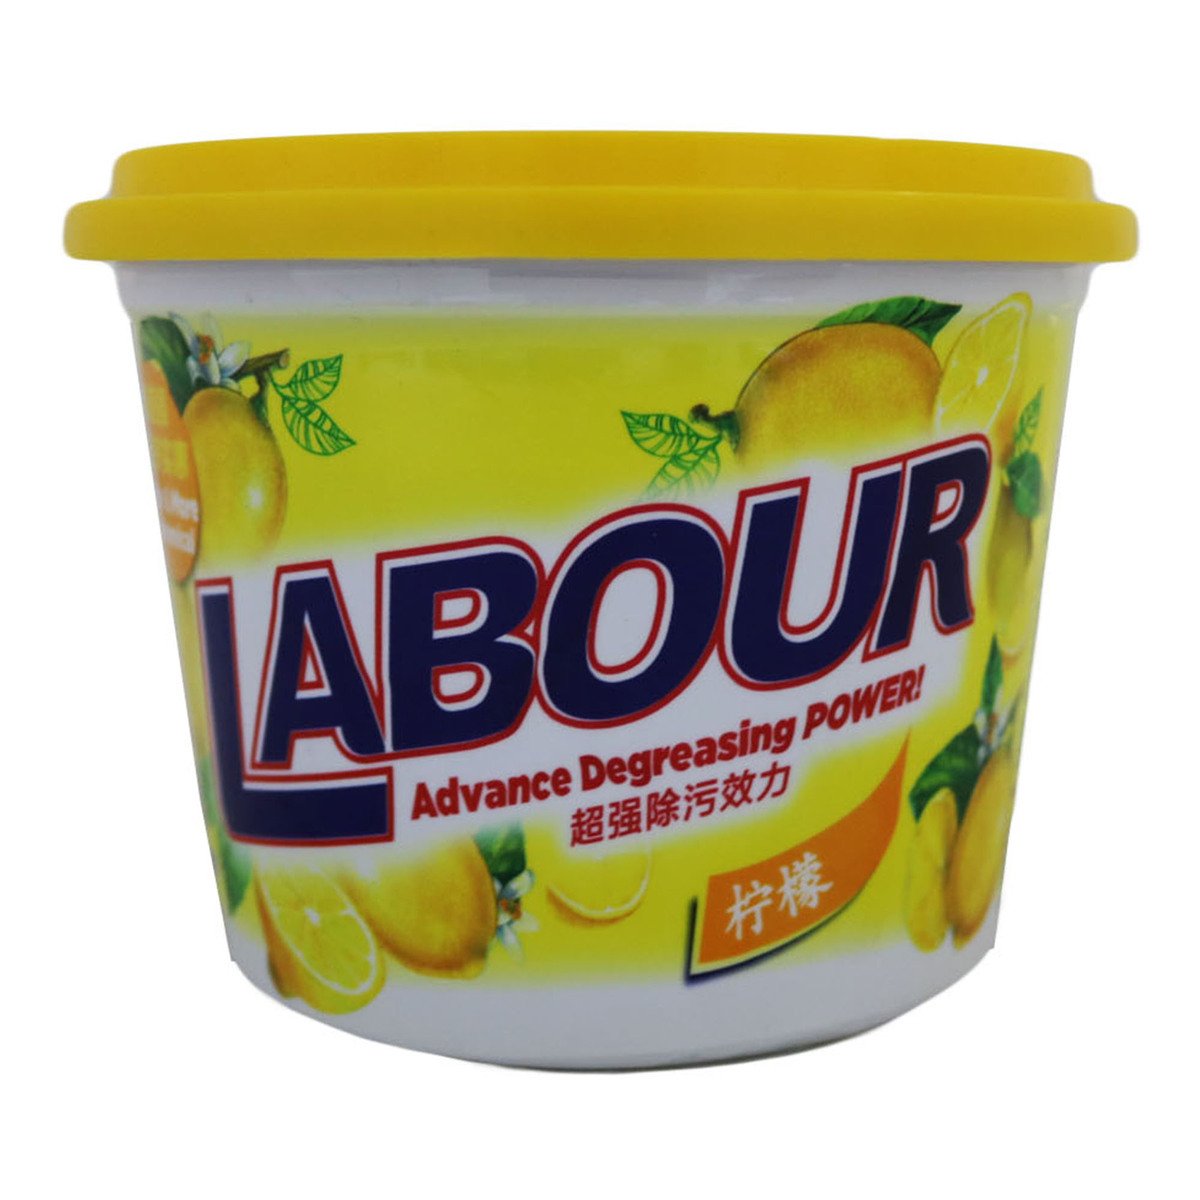 Labour Paste Lemon 750g